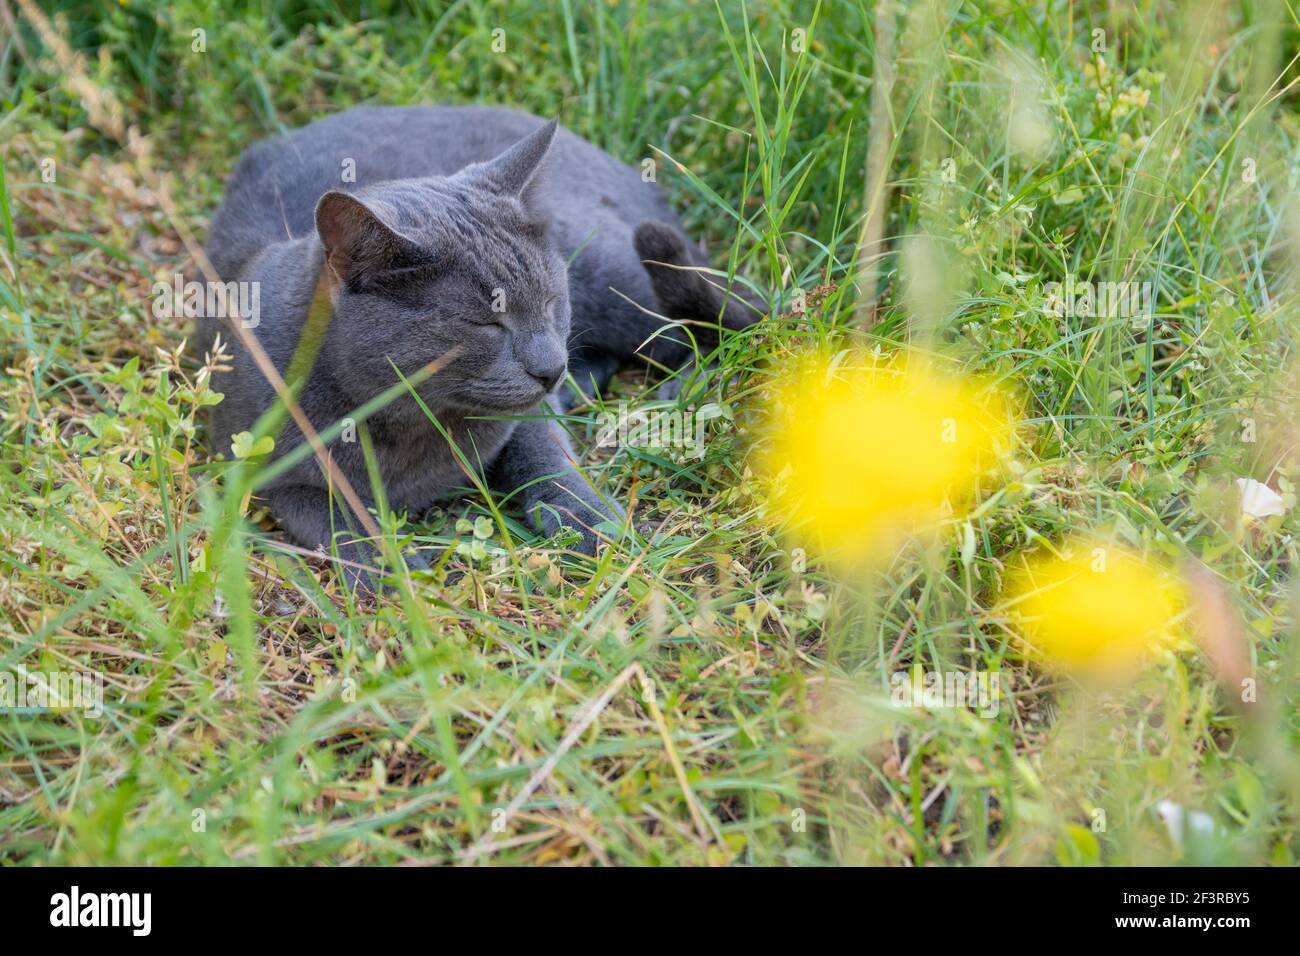 Un adorable chat gris est couché et se détend dans une herbe verte luxuriante au printemps. Nature et arrière-plan animal avec espace de copie. Banque D'Images